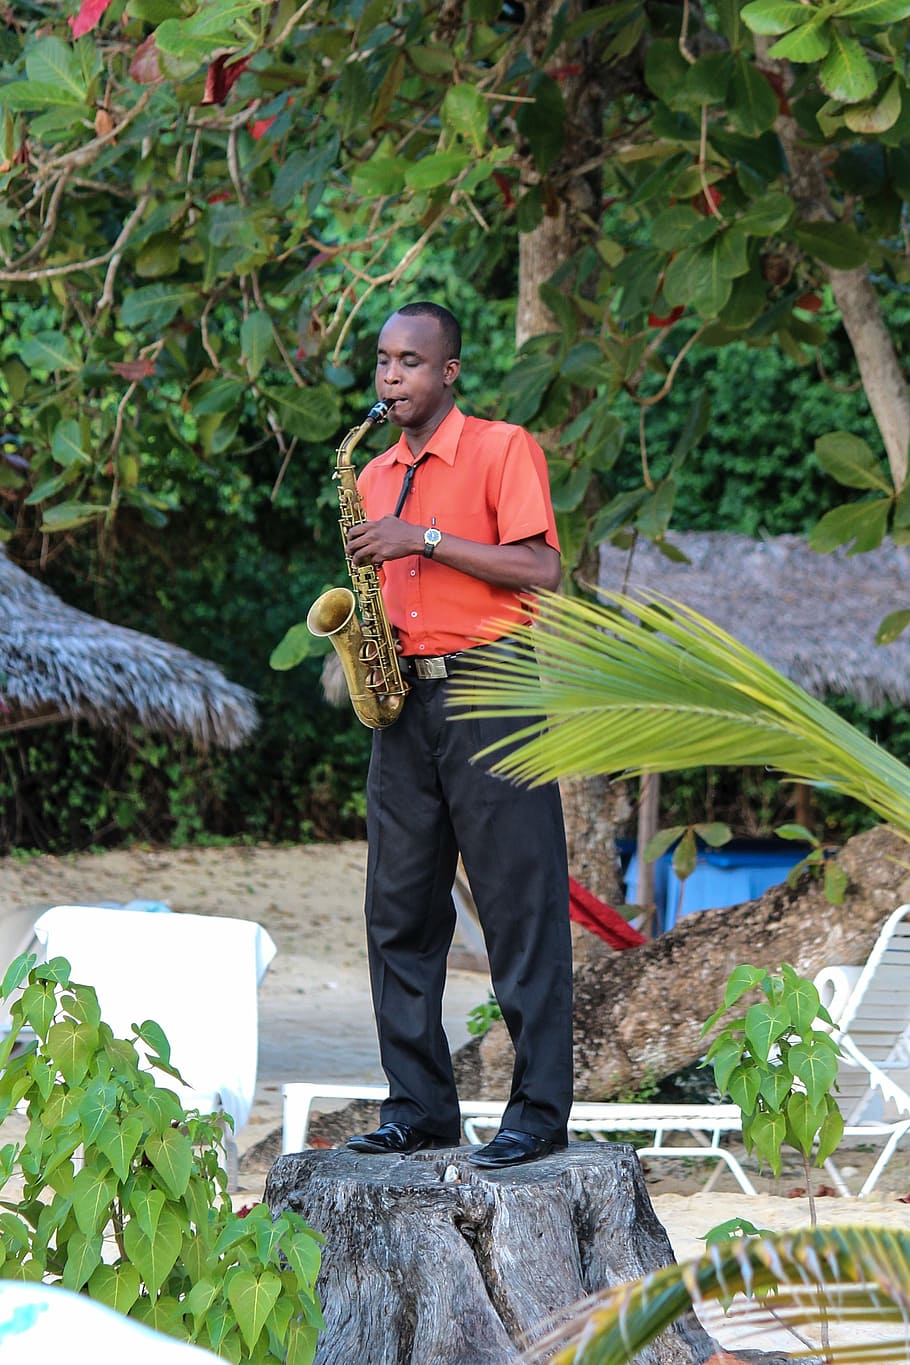 jamaica, saxofone, música, praia, músico, jazz, Toque, musical, instrumento, som